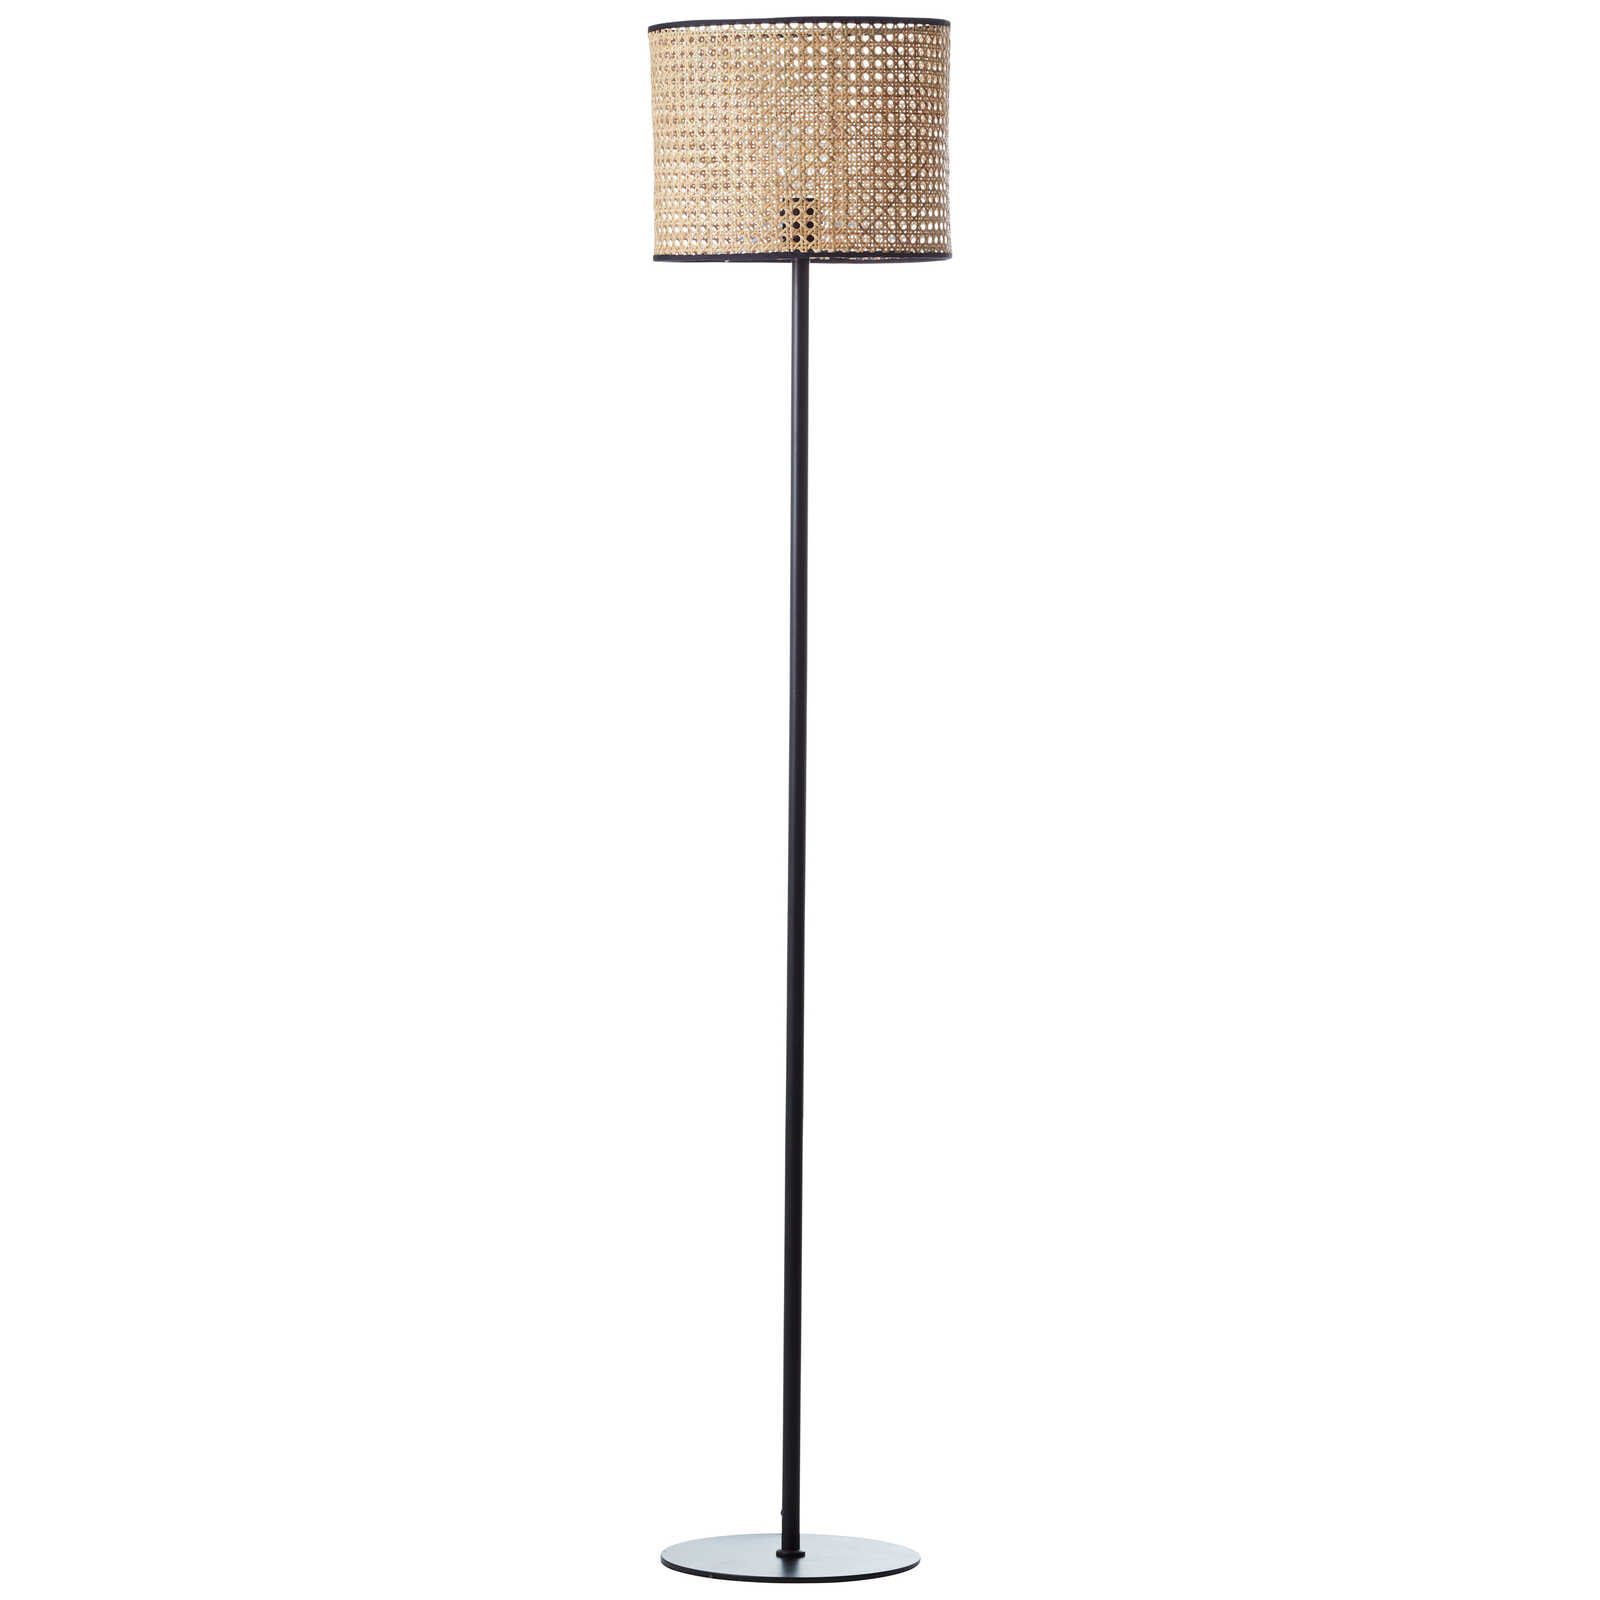             Rattan floor lamp - Toni 5 - Beige
        